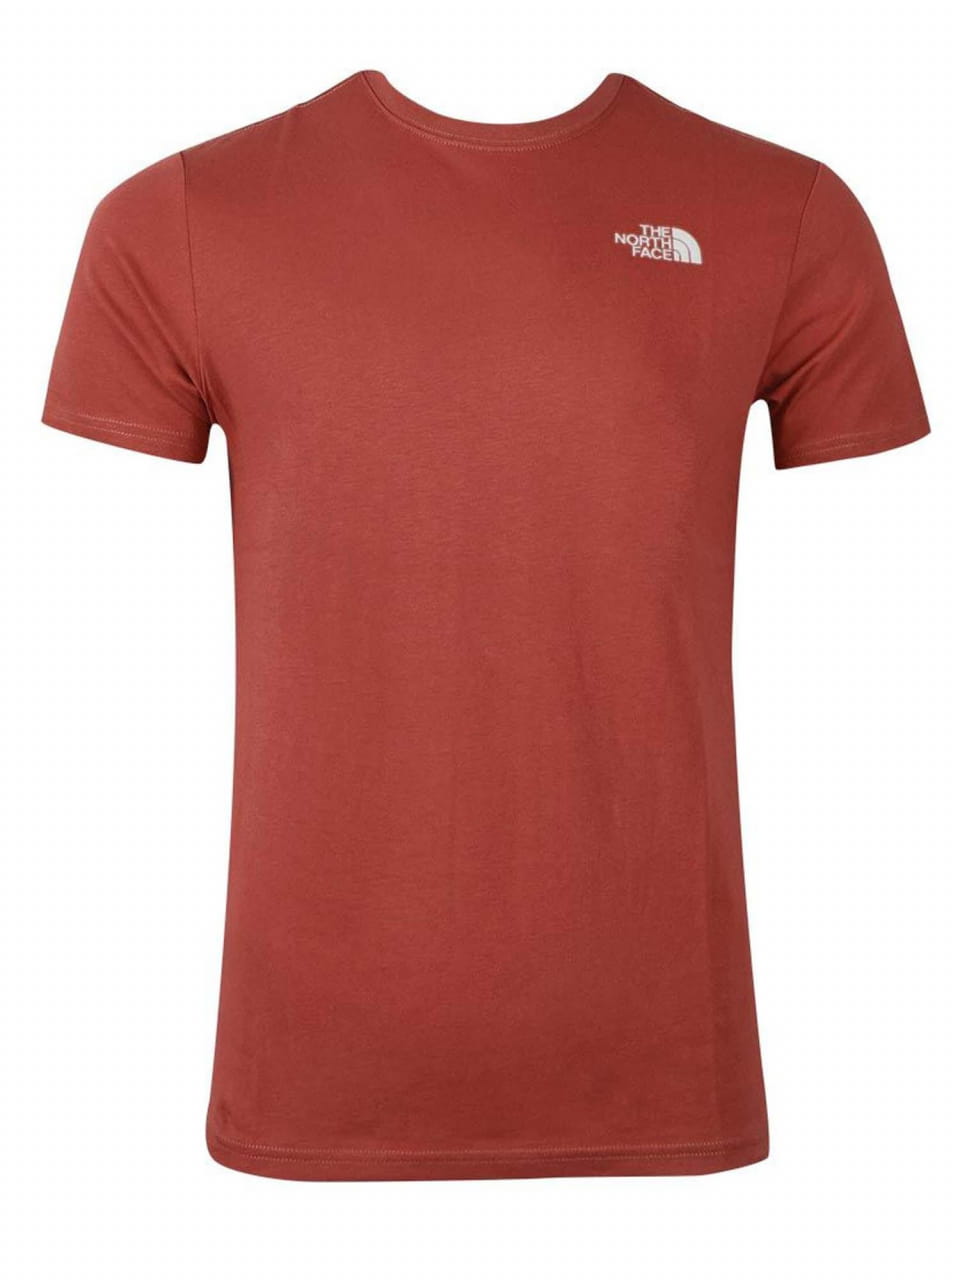 Herren-T-Shirt The North Face Men´s S/S Redbox Tee